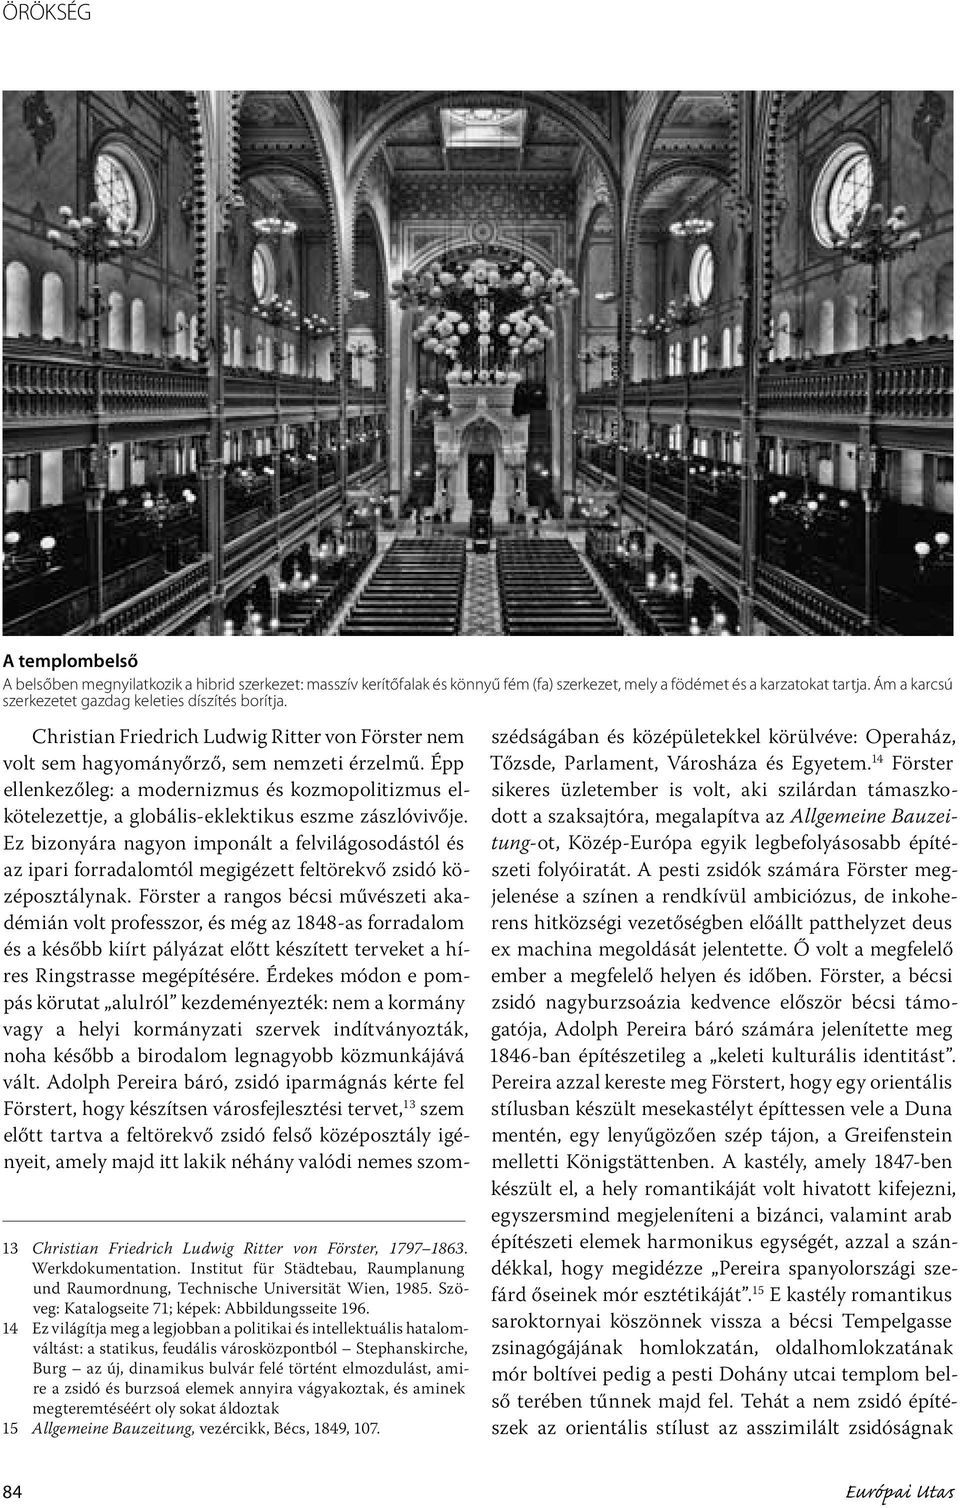 Institut für Städtebau, Raumplanung und Raumordnung, Technische Universität Wien, 1985. Szöveg: Katalogseite 71; képek: Abbildungsseite 196.